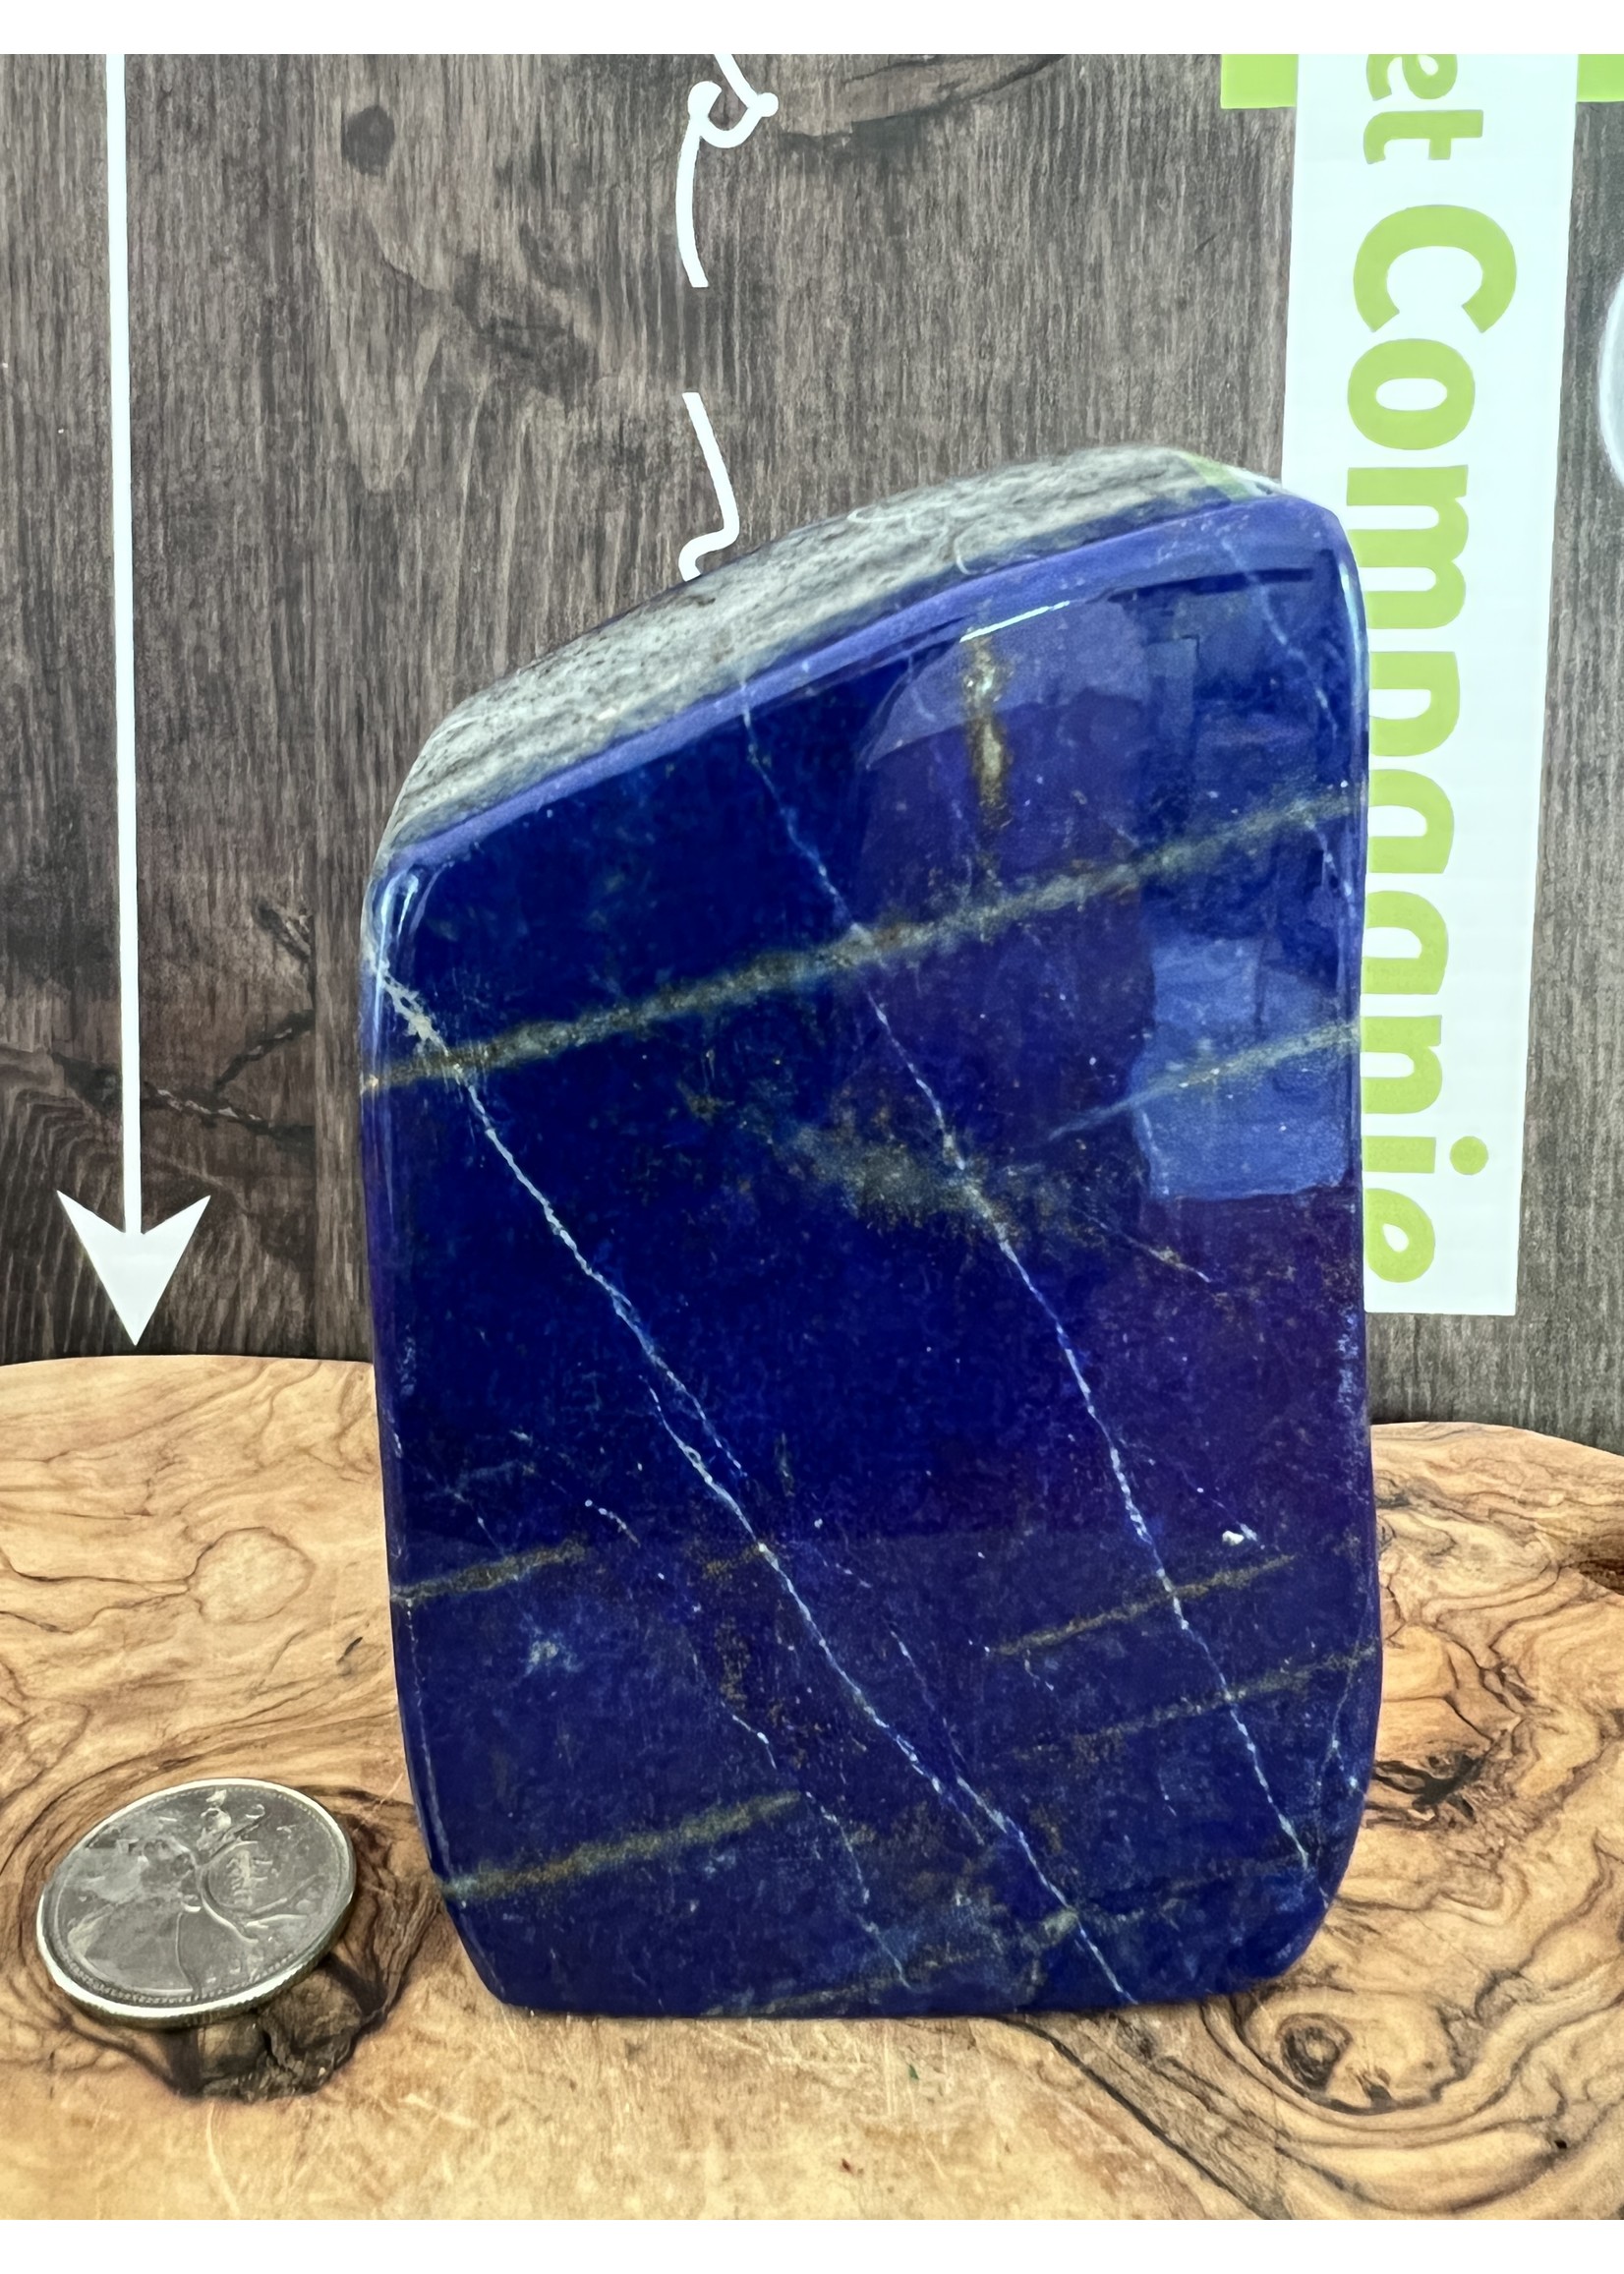 pièce remarquable de lapis lazuli forme libre, considérée comme la clé de la connaissance du royaume céleste